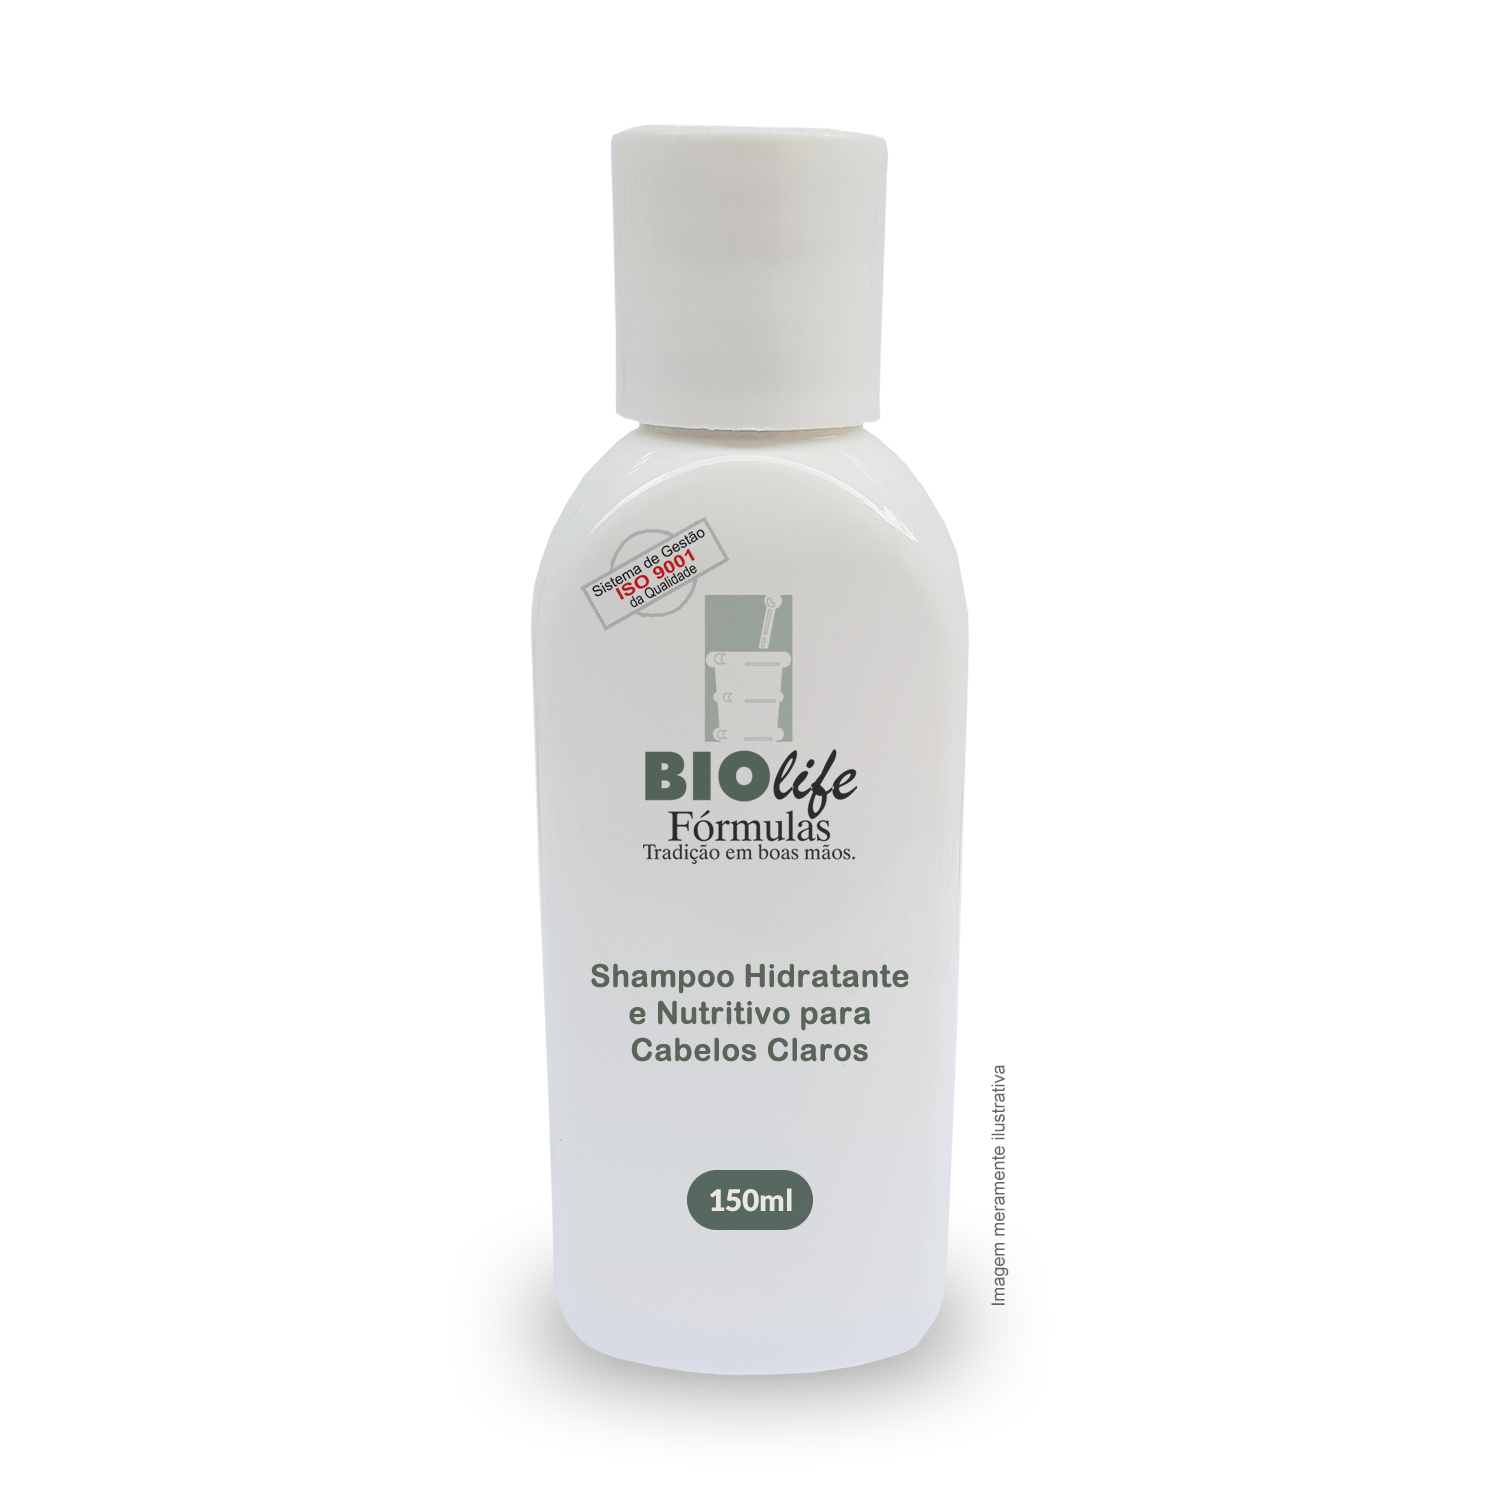 Shampoo Hidratante e Nutritivo para Cabelos Claros com 150mL - BioLife